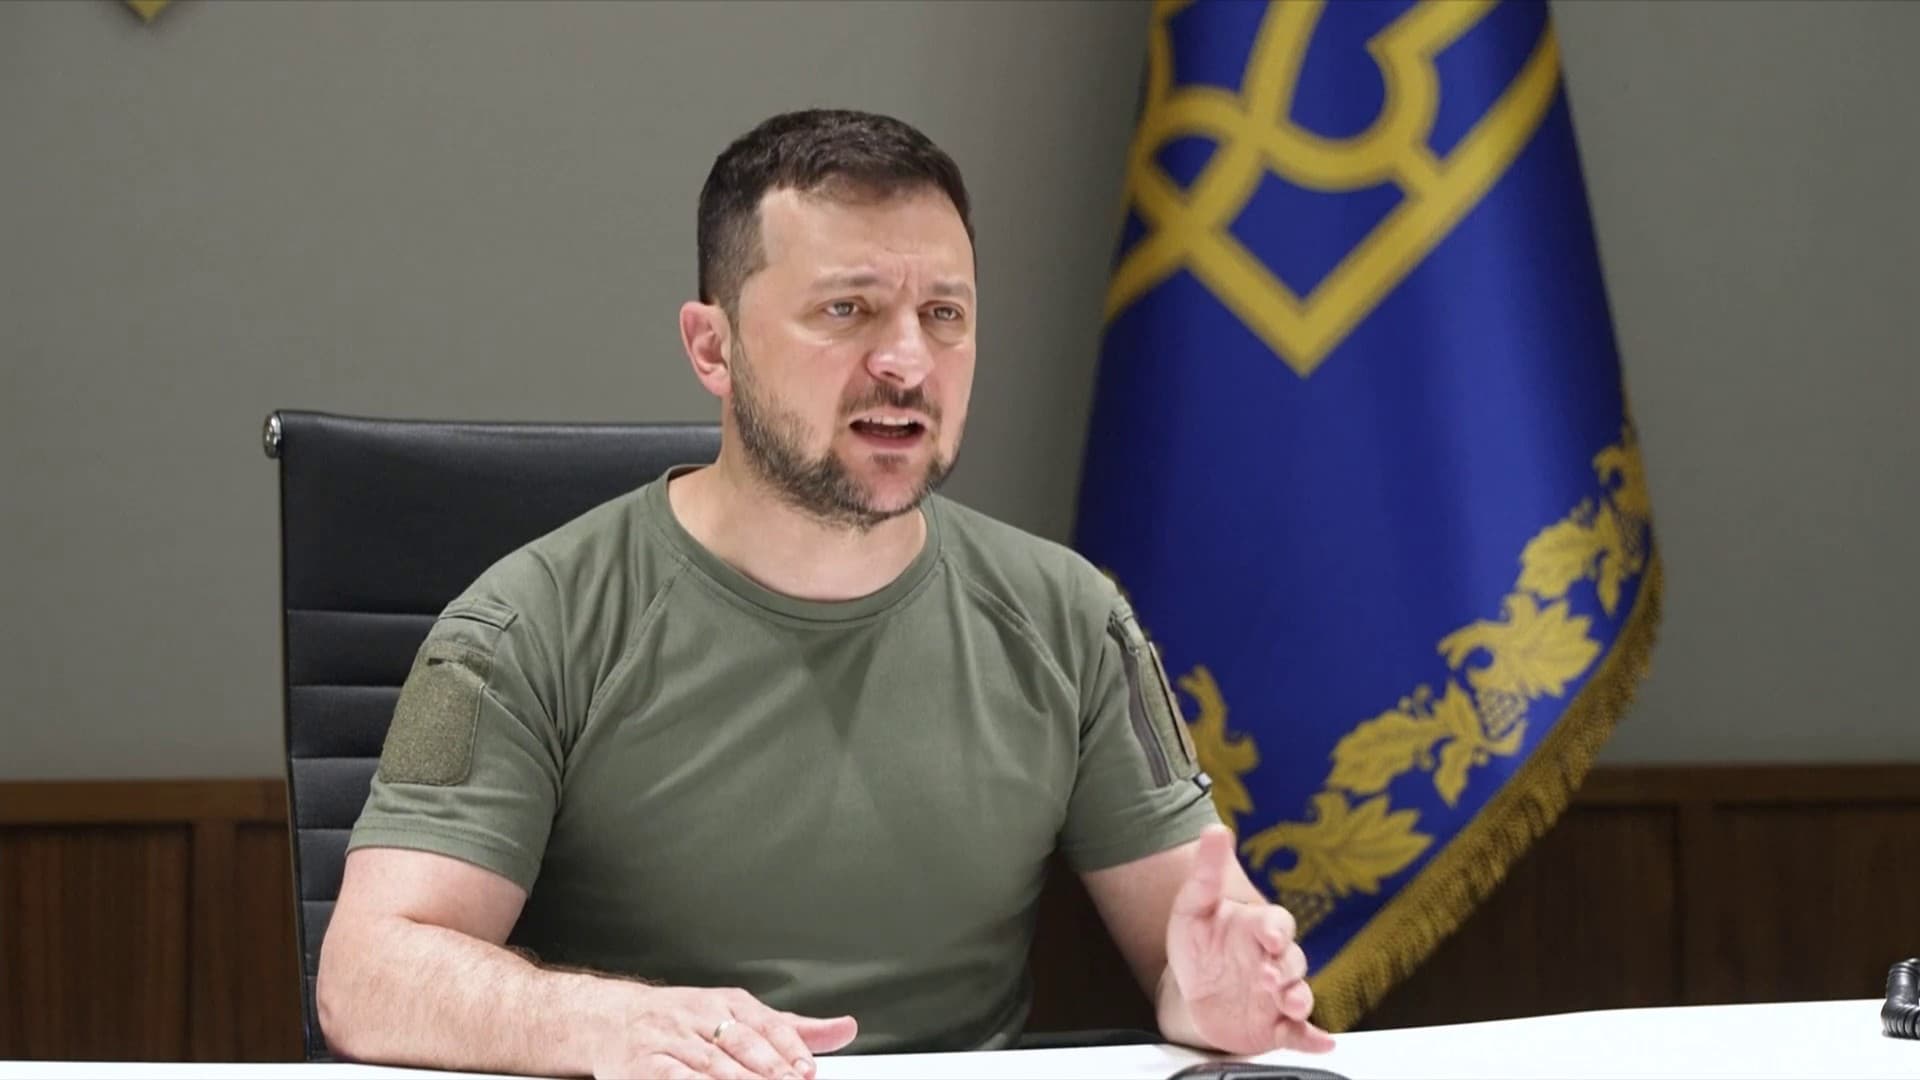 EN DIRECT – Ucraina: Zelensky appelle à “déférer en justice les vrais criminels de guerre”